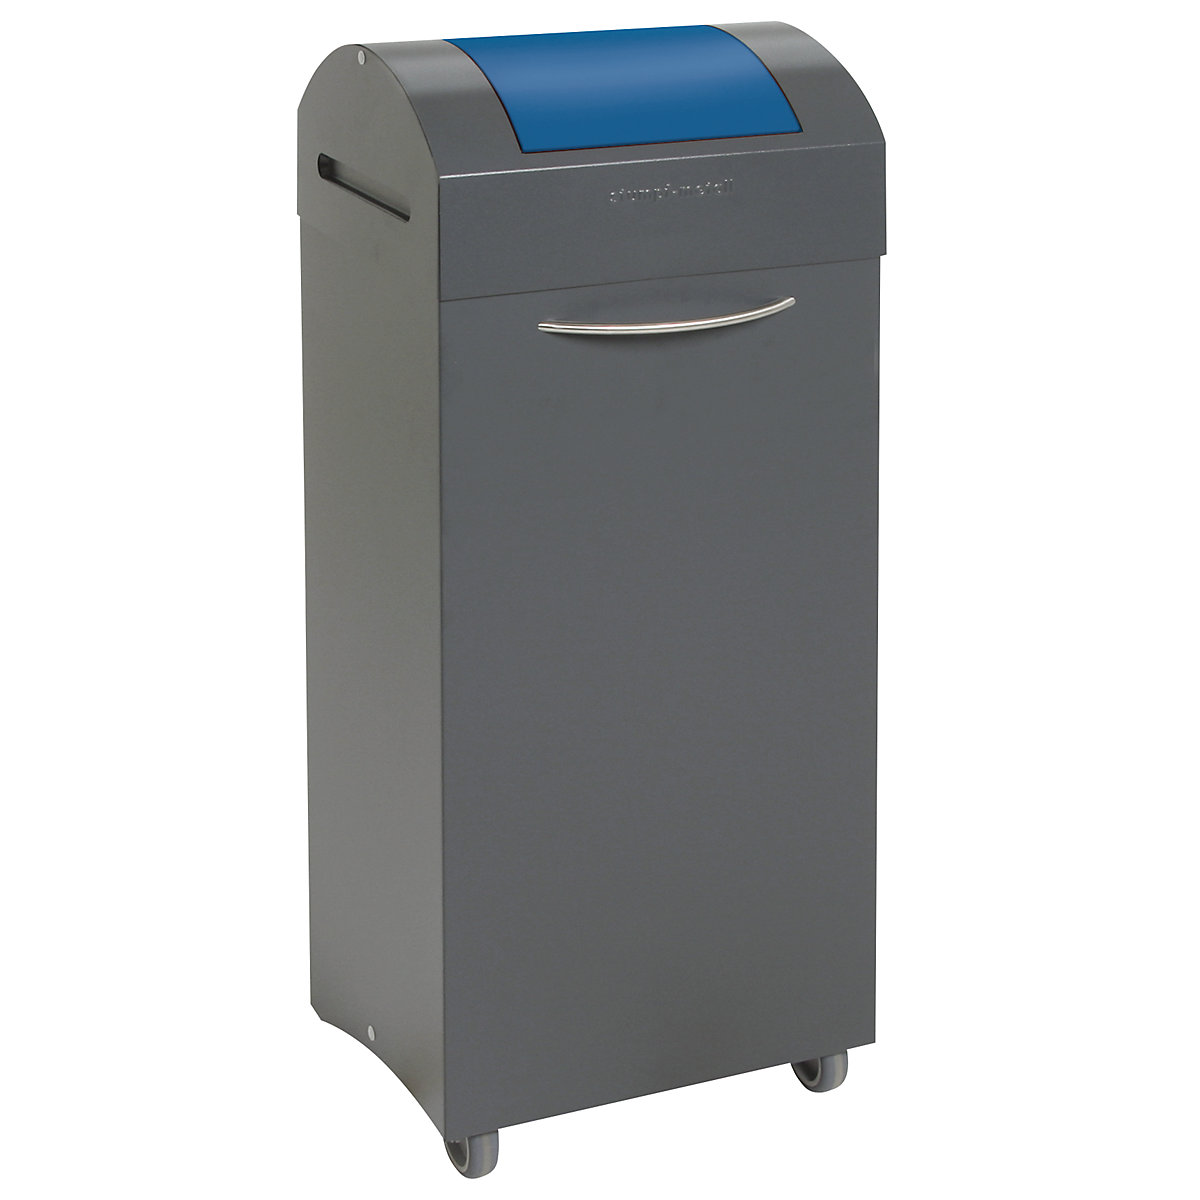 Coletor de materiais recicláveis, autoextintor, volume 75 l, LxAxP 380 x 940 x 320 mm, inserção em azul genciana-8